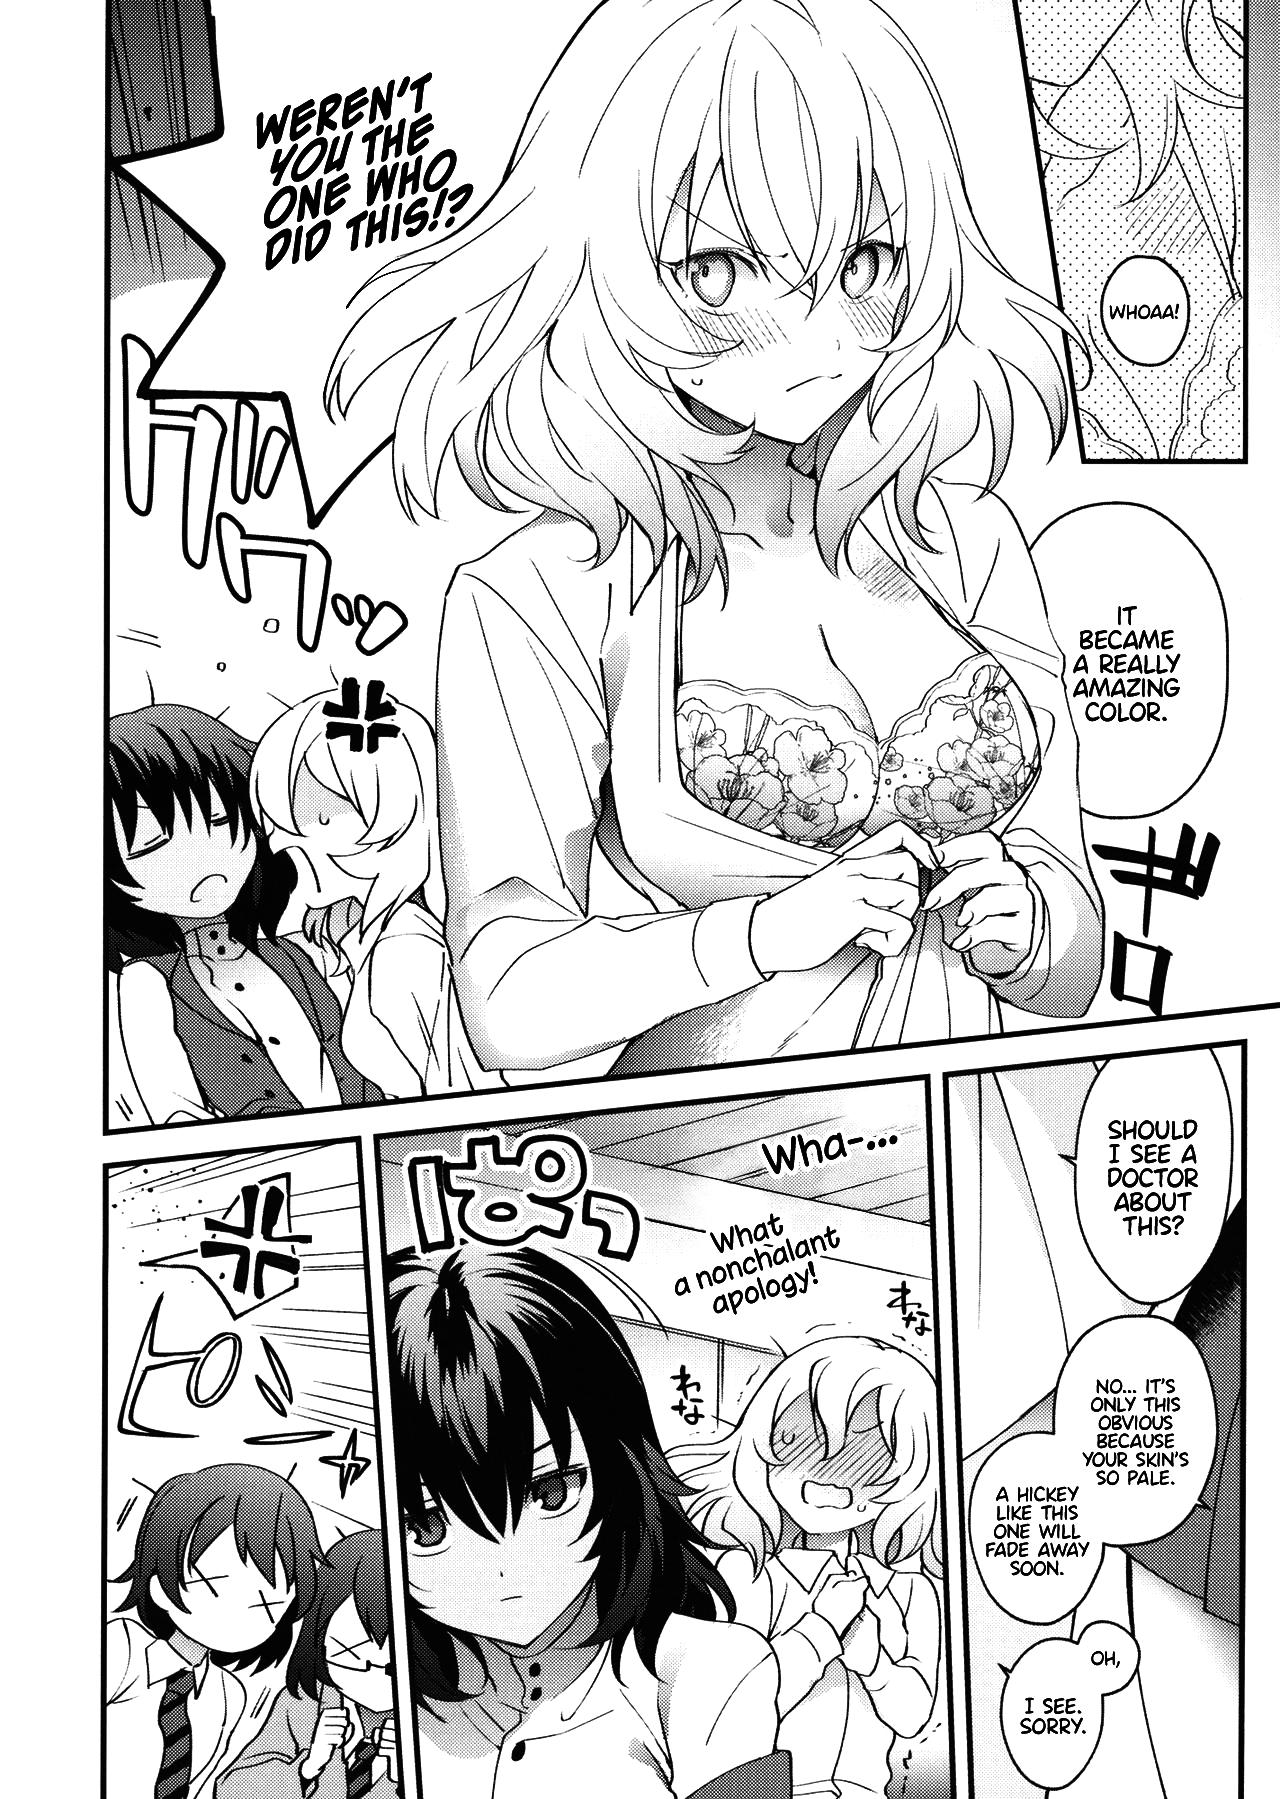 Peludo Shinsetsu no Kimi e - Girls und panzer Uncensored - Page 3